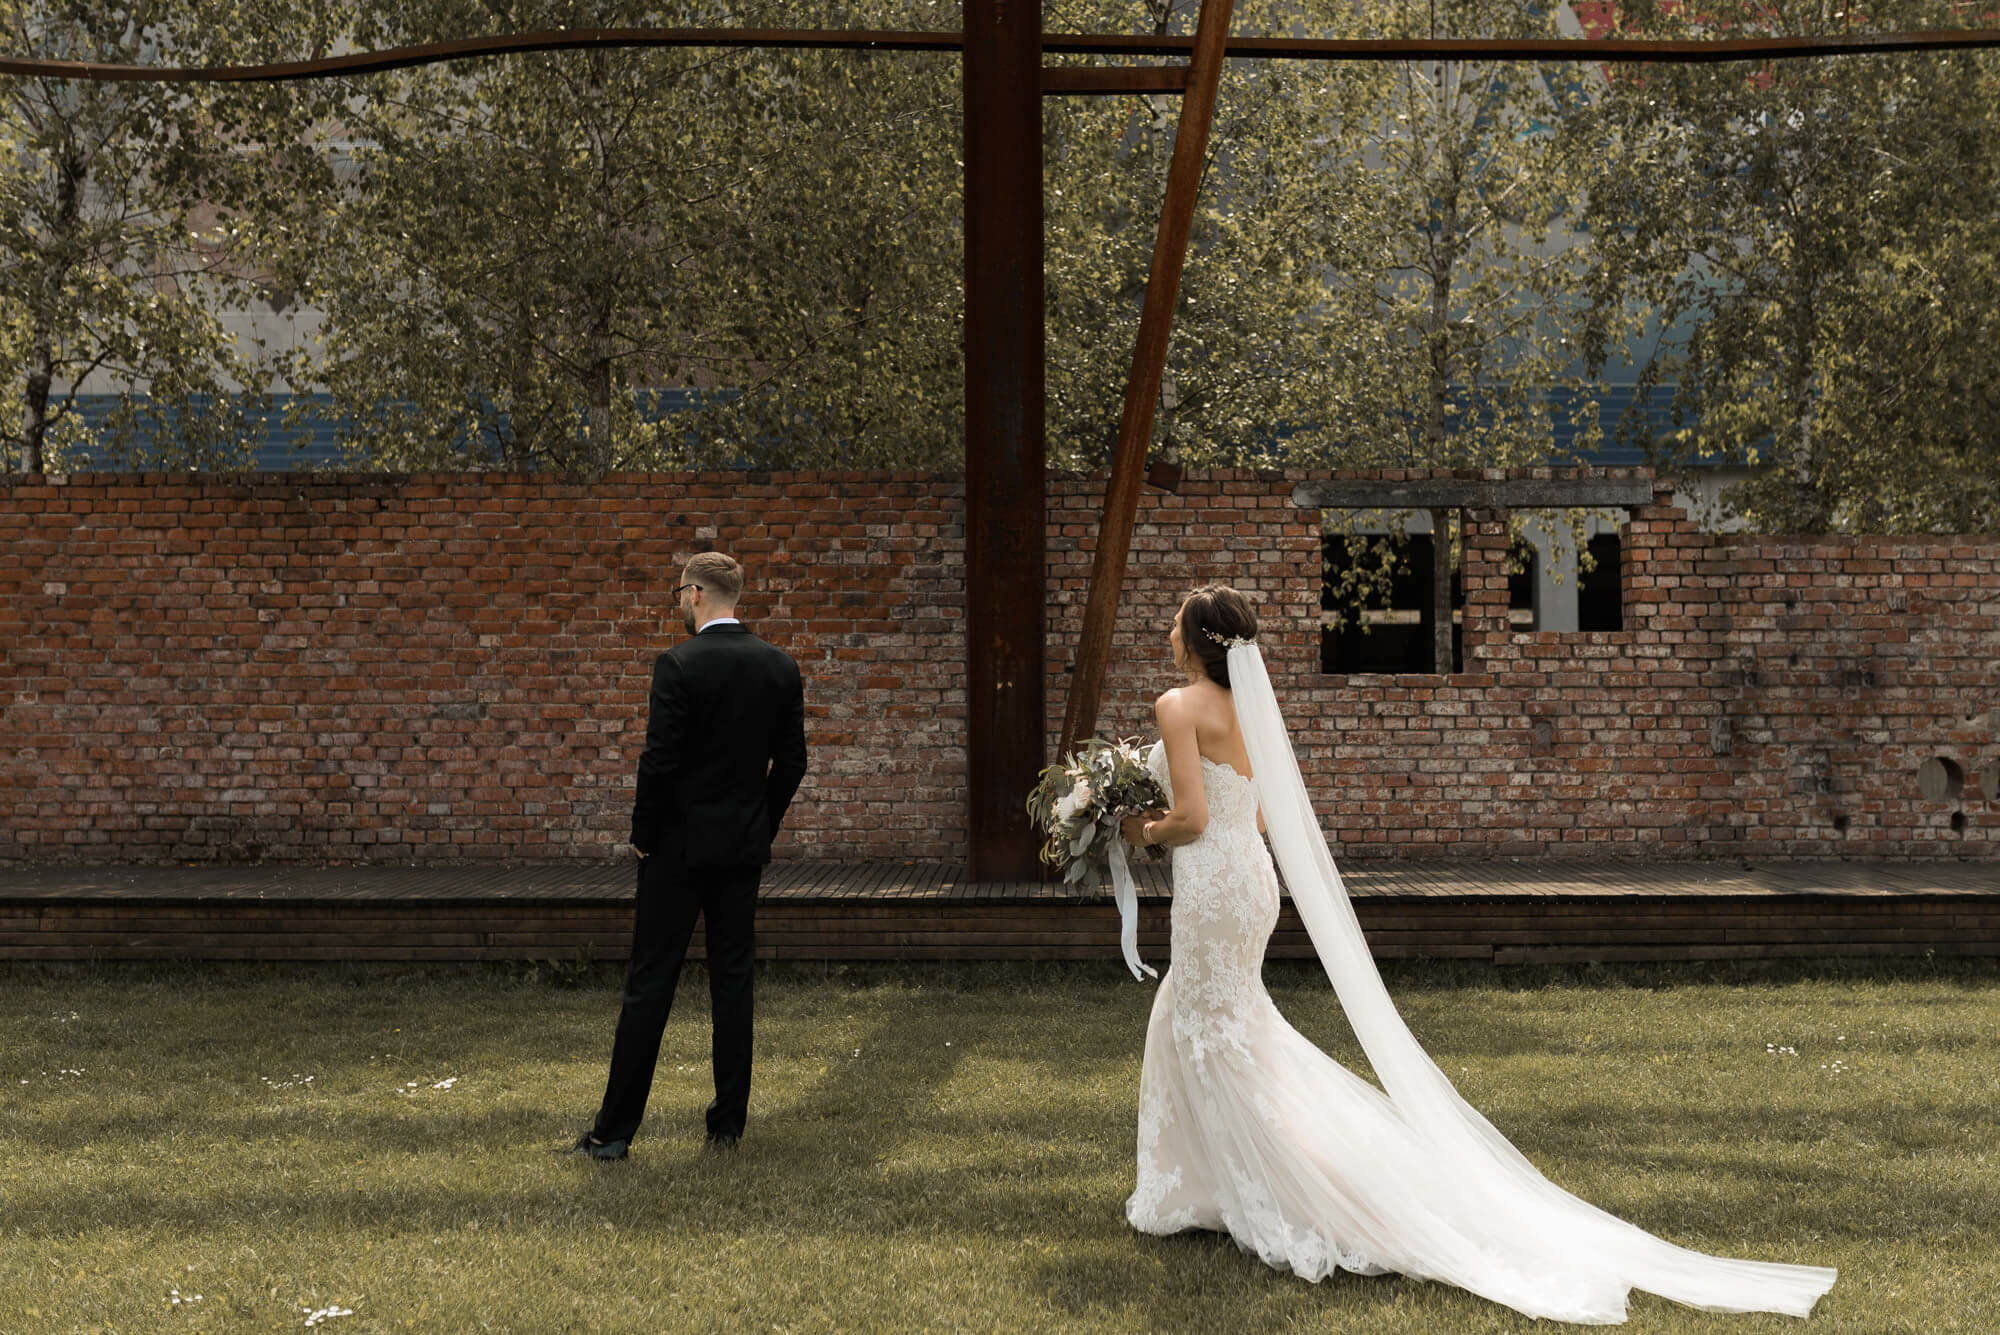 Braut mit Hochzeitskleid und Schleier läuft bei First Look auf den Bräutigam zu der mit dem Rücken zu ihr auf einer Wiese vor Ziegelsteinmauer